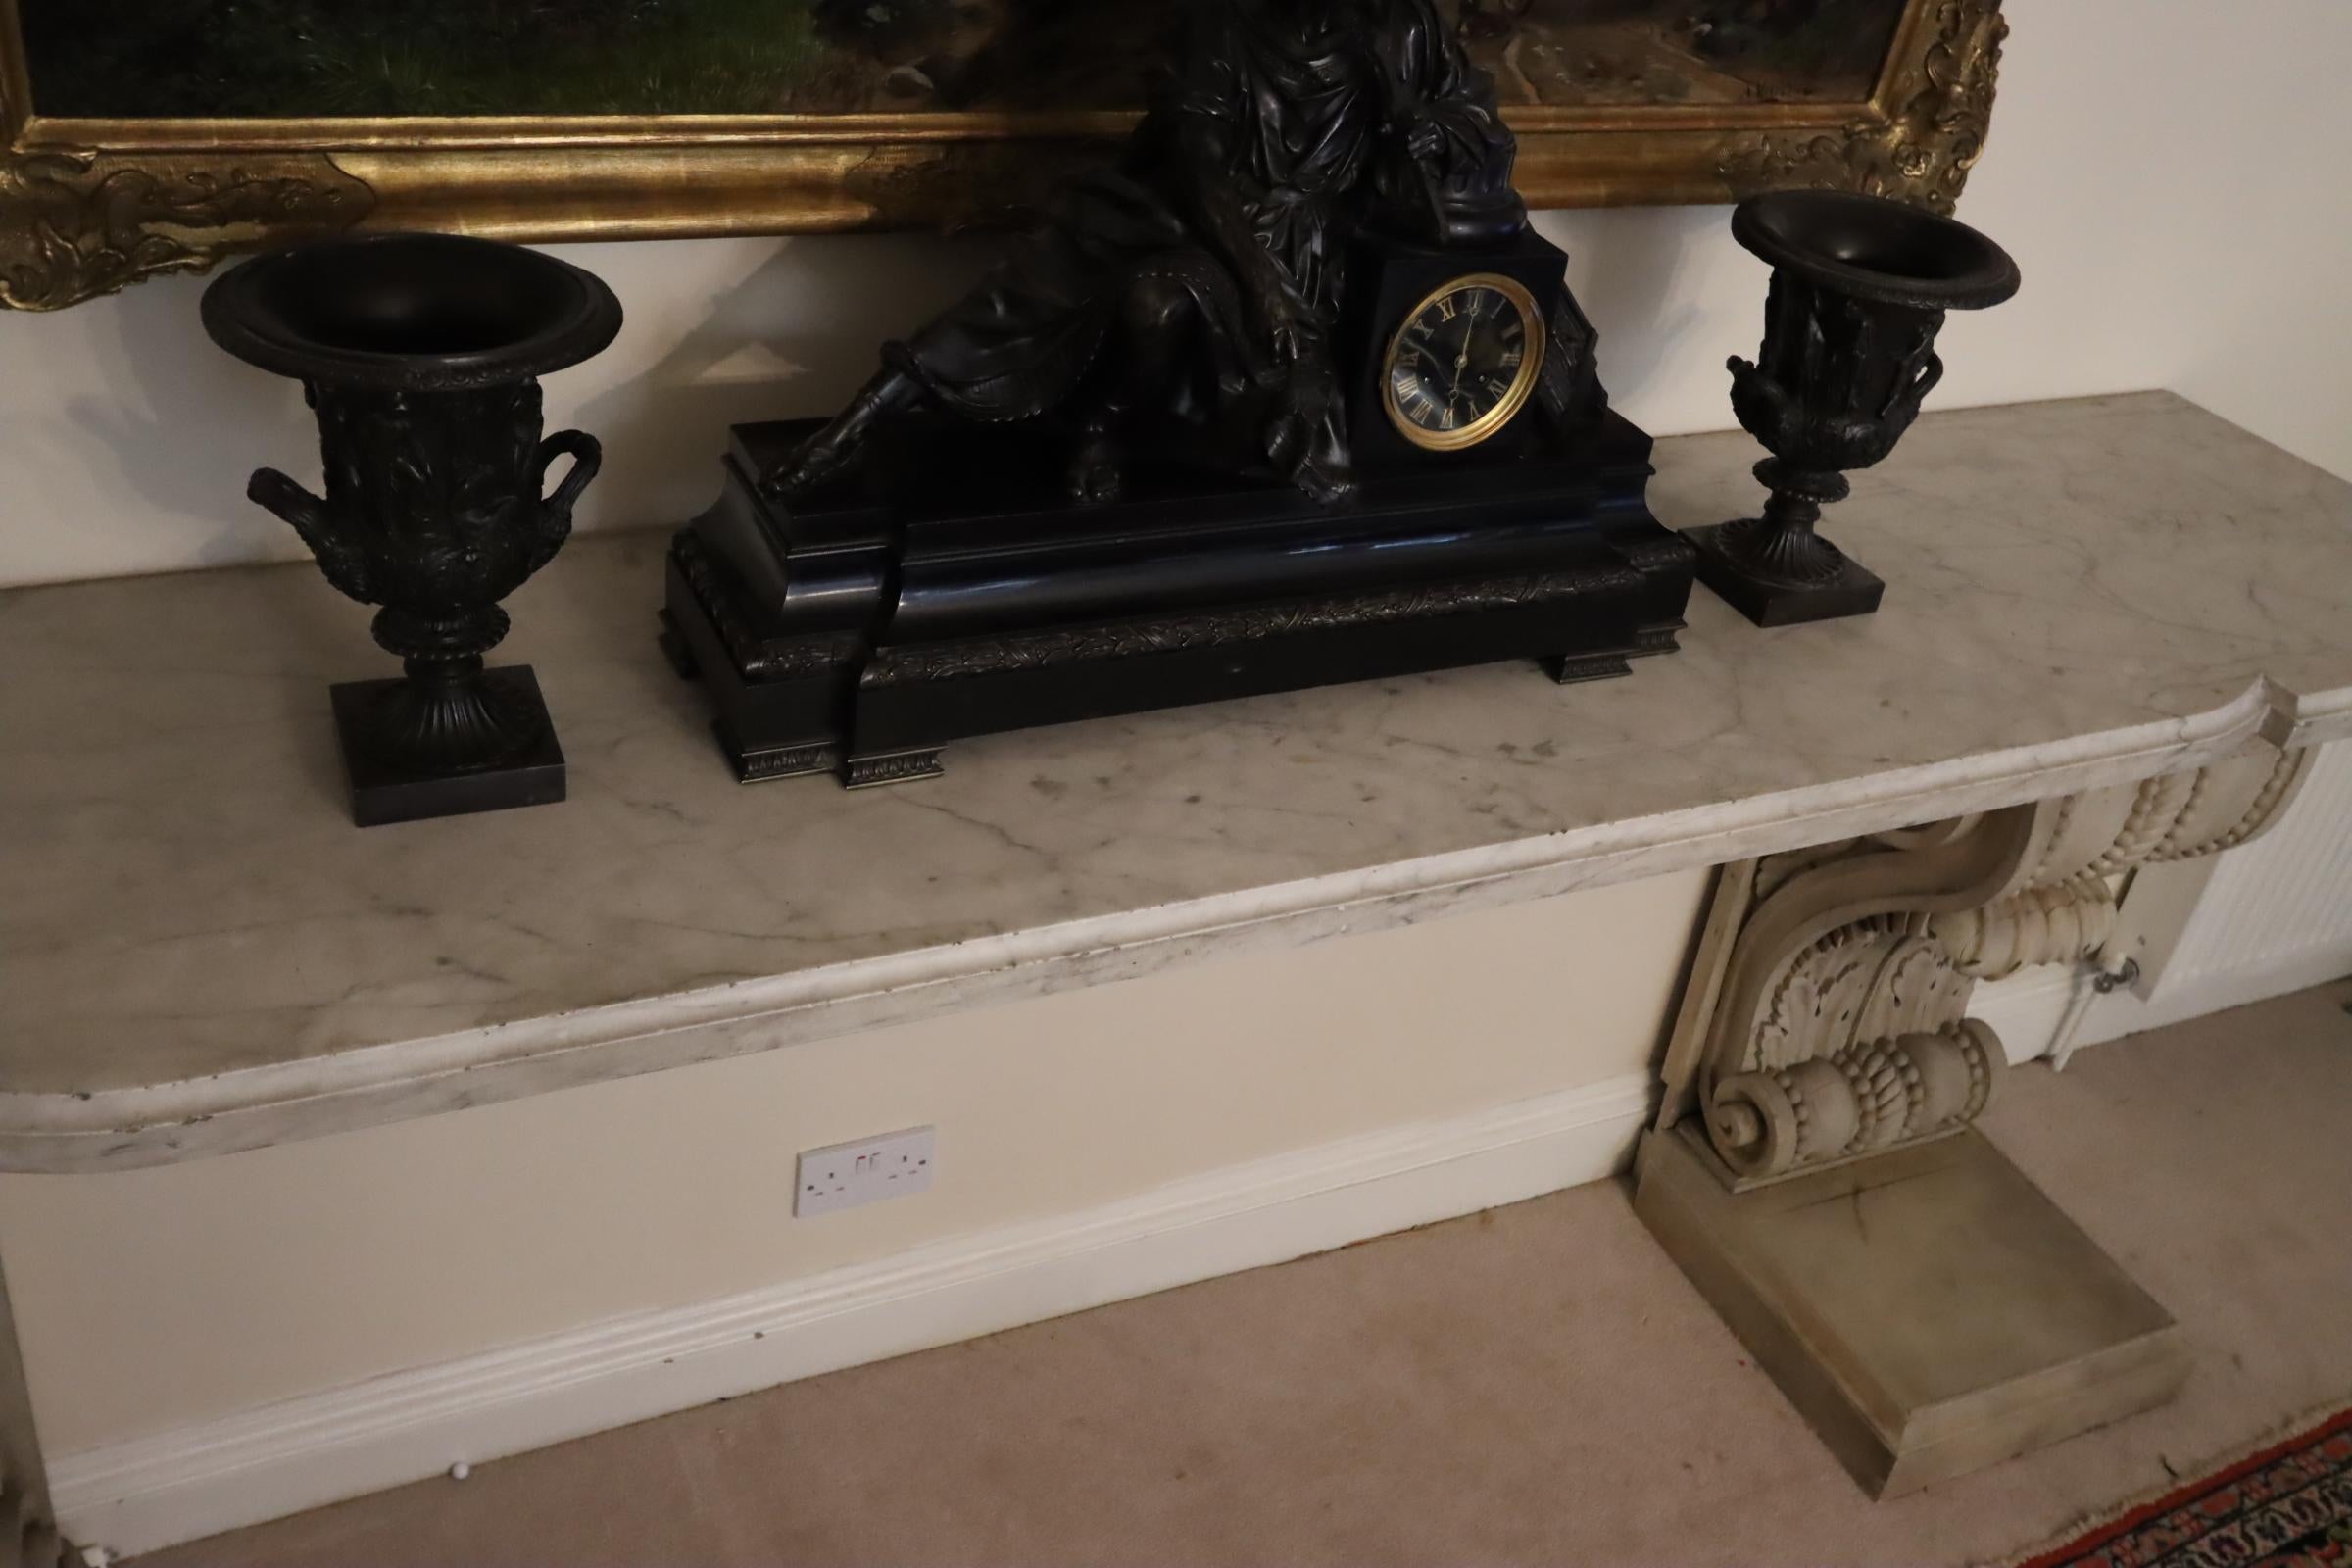 Magnifique table console en marbre, avec des socles en bois sculpté, du 18e siècle. Cette pièce a des proportions importantes et sera le point culminant de n'importe quelle pièce où elle sera placée. Il conviendrait aussi bien à une maison